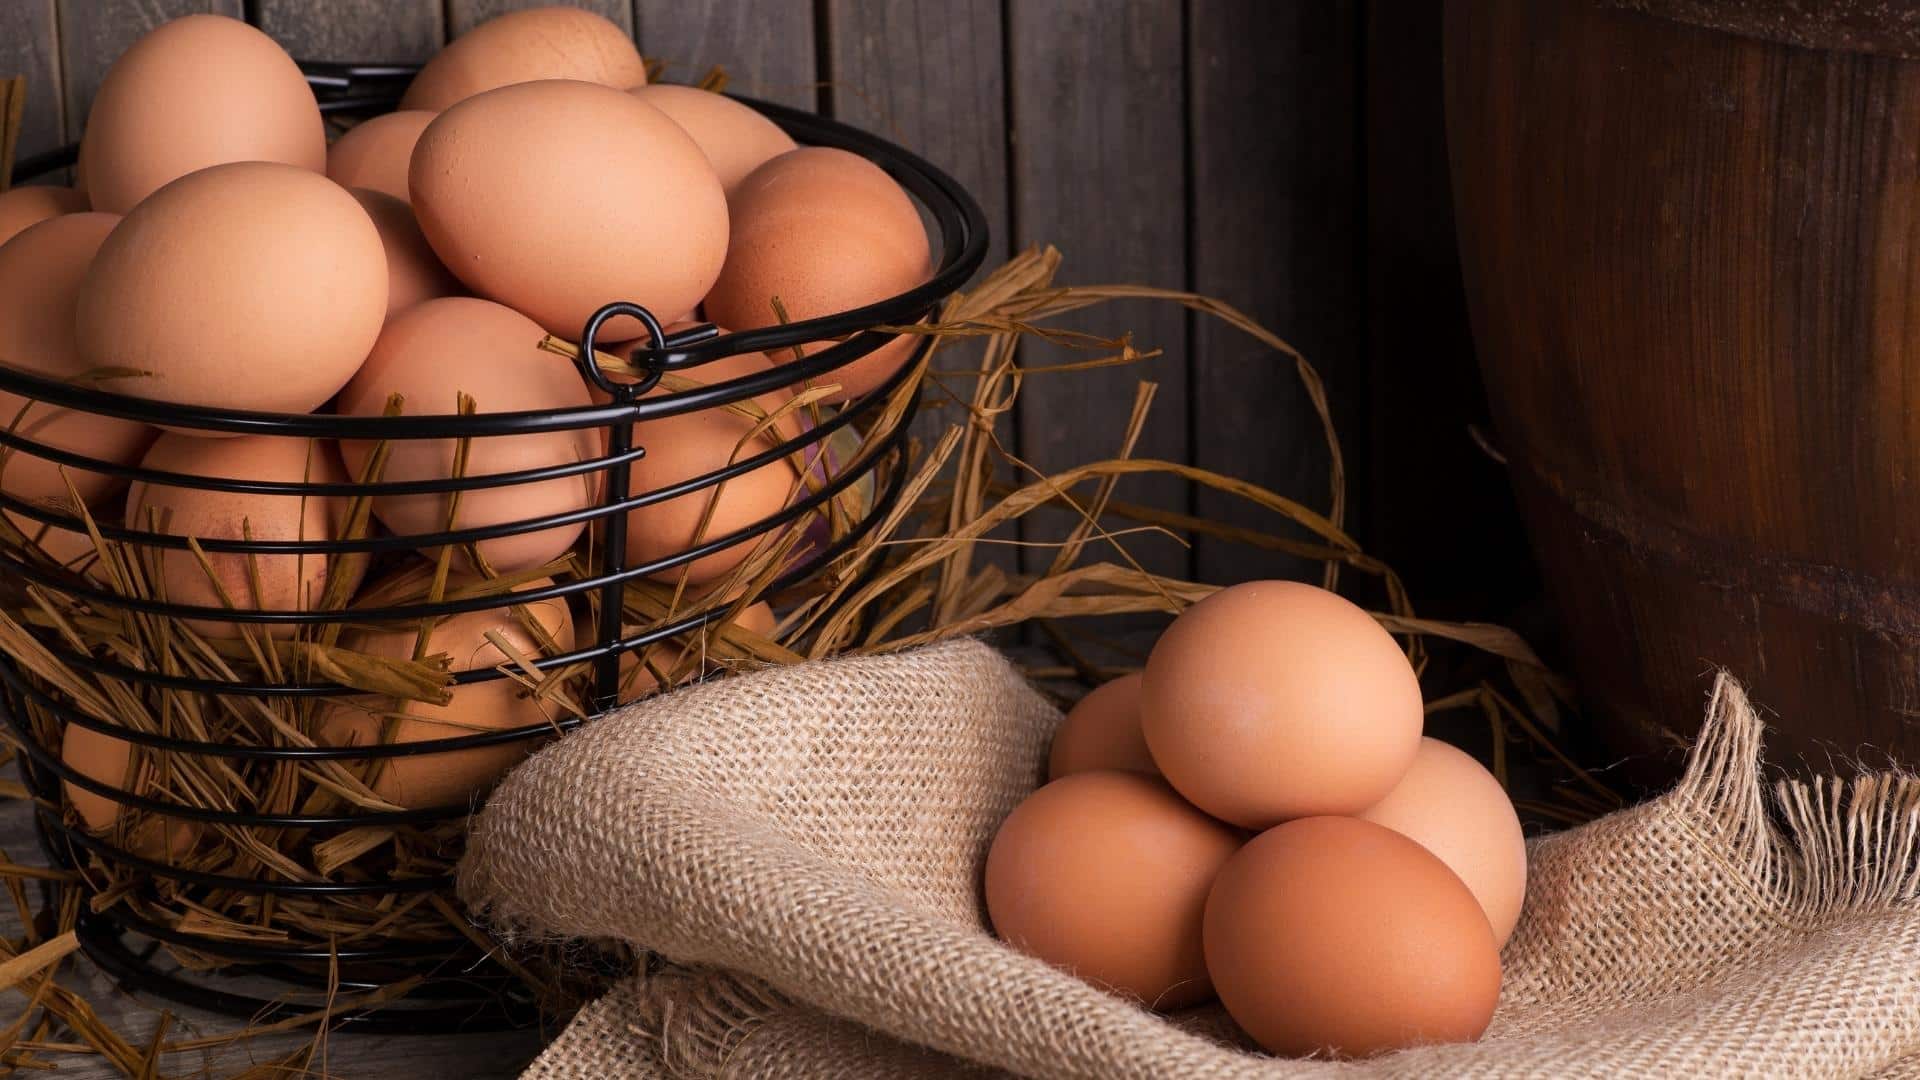 כמה זמן אפשר לשמור ביצה קשה במקרר